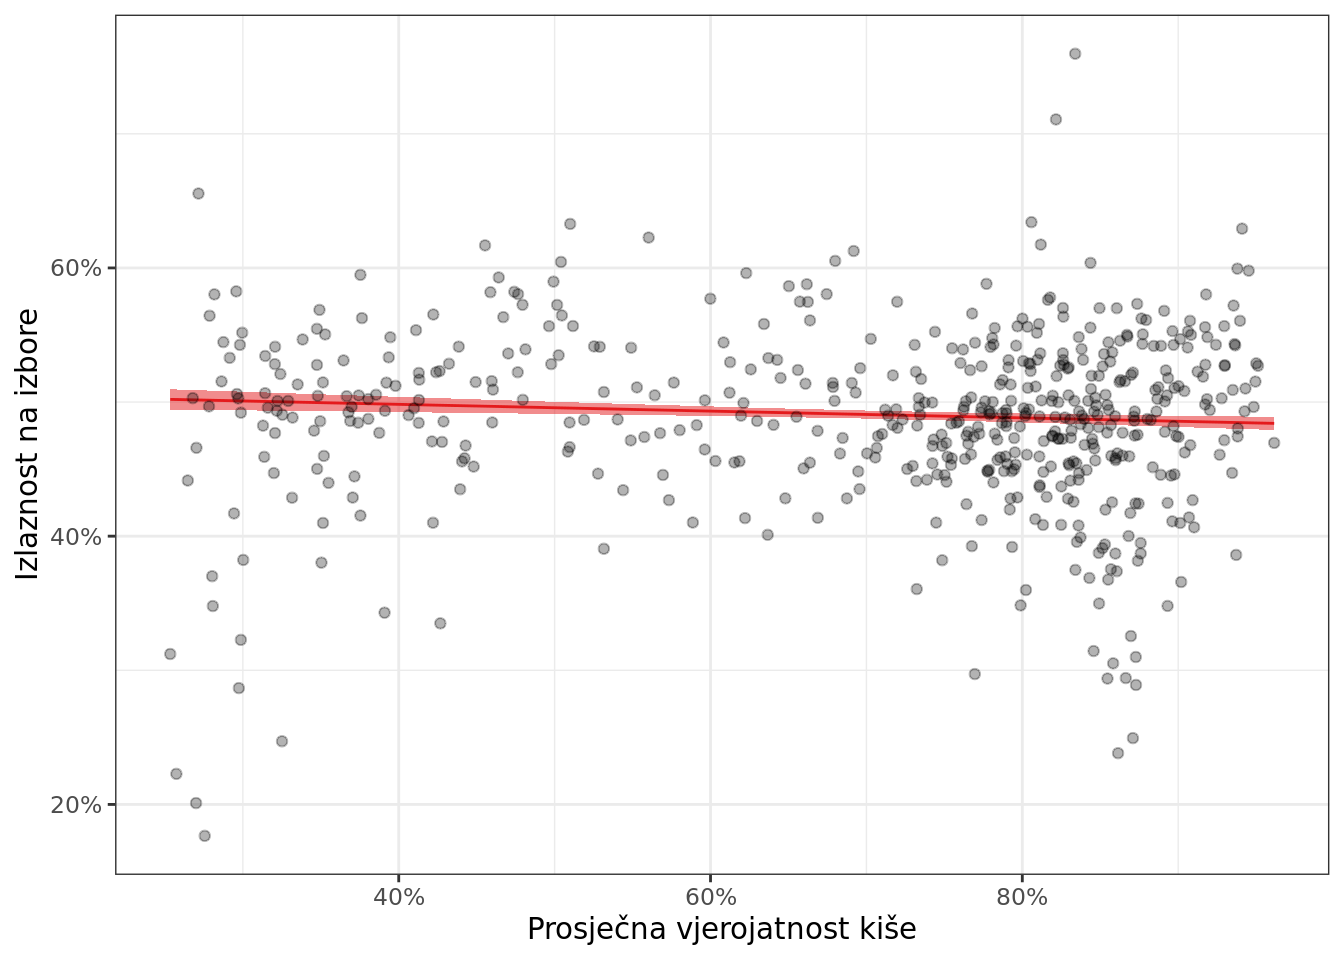 Povezanost prosječne vjerojatnosti kiše i izlaznosti na izbore u gradovima i općinama